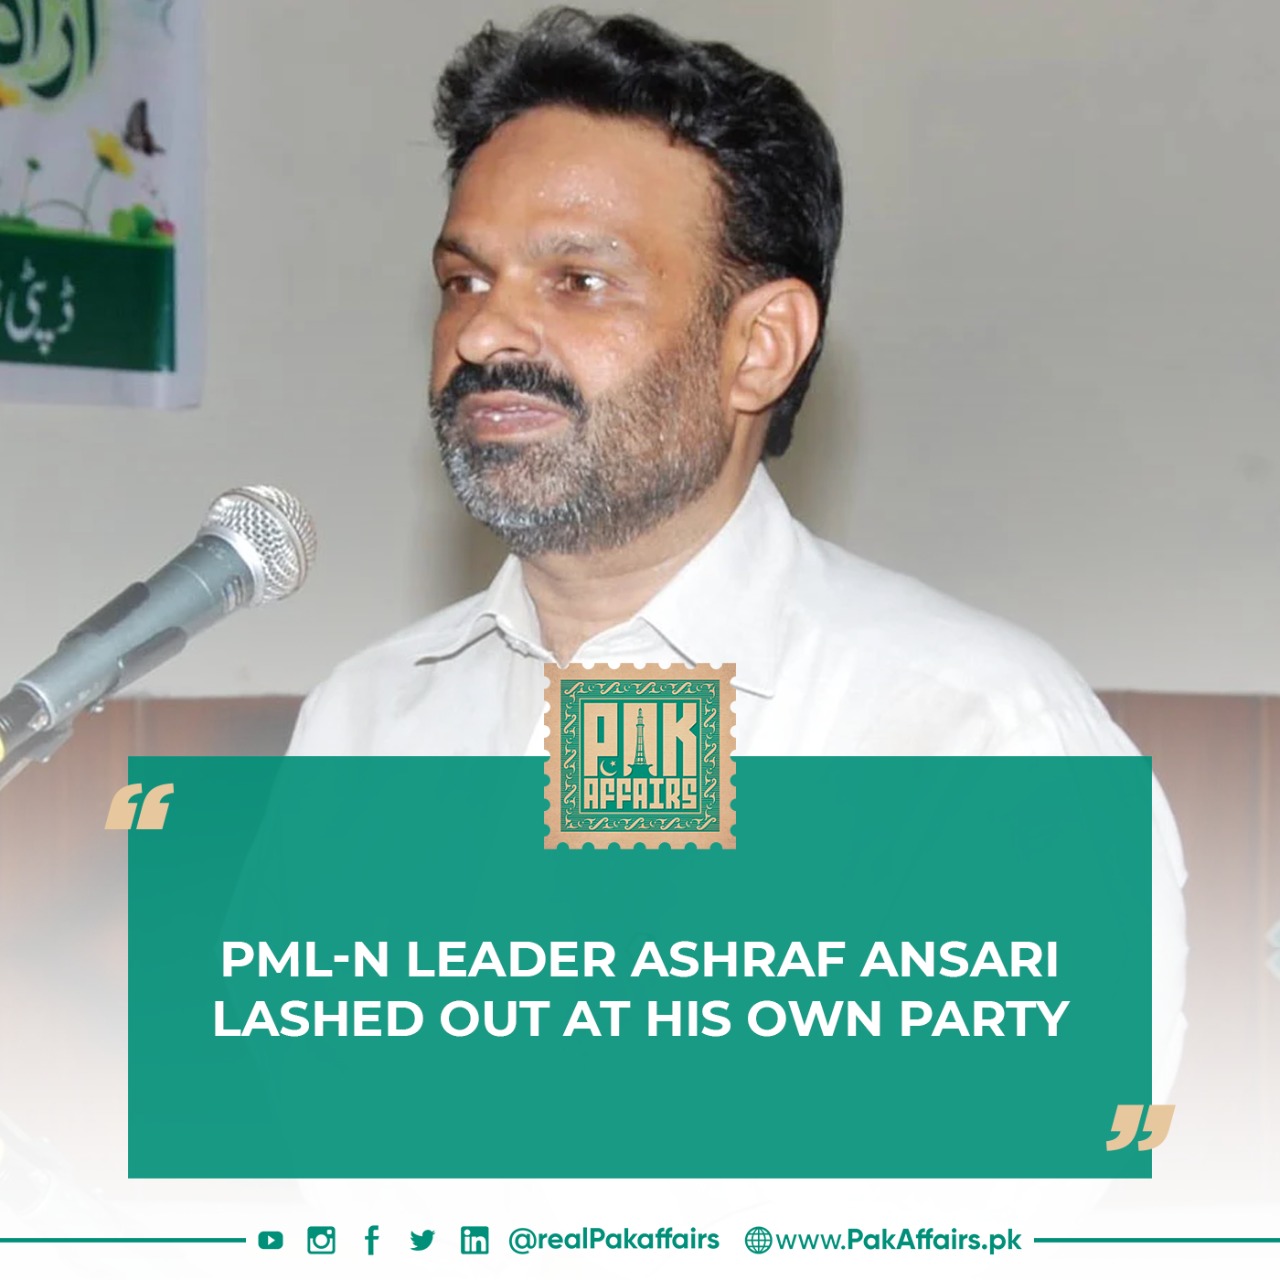 PML-N leader Ashraf Ansari lashed out at his own party